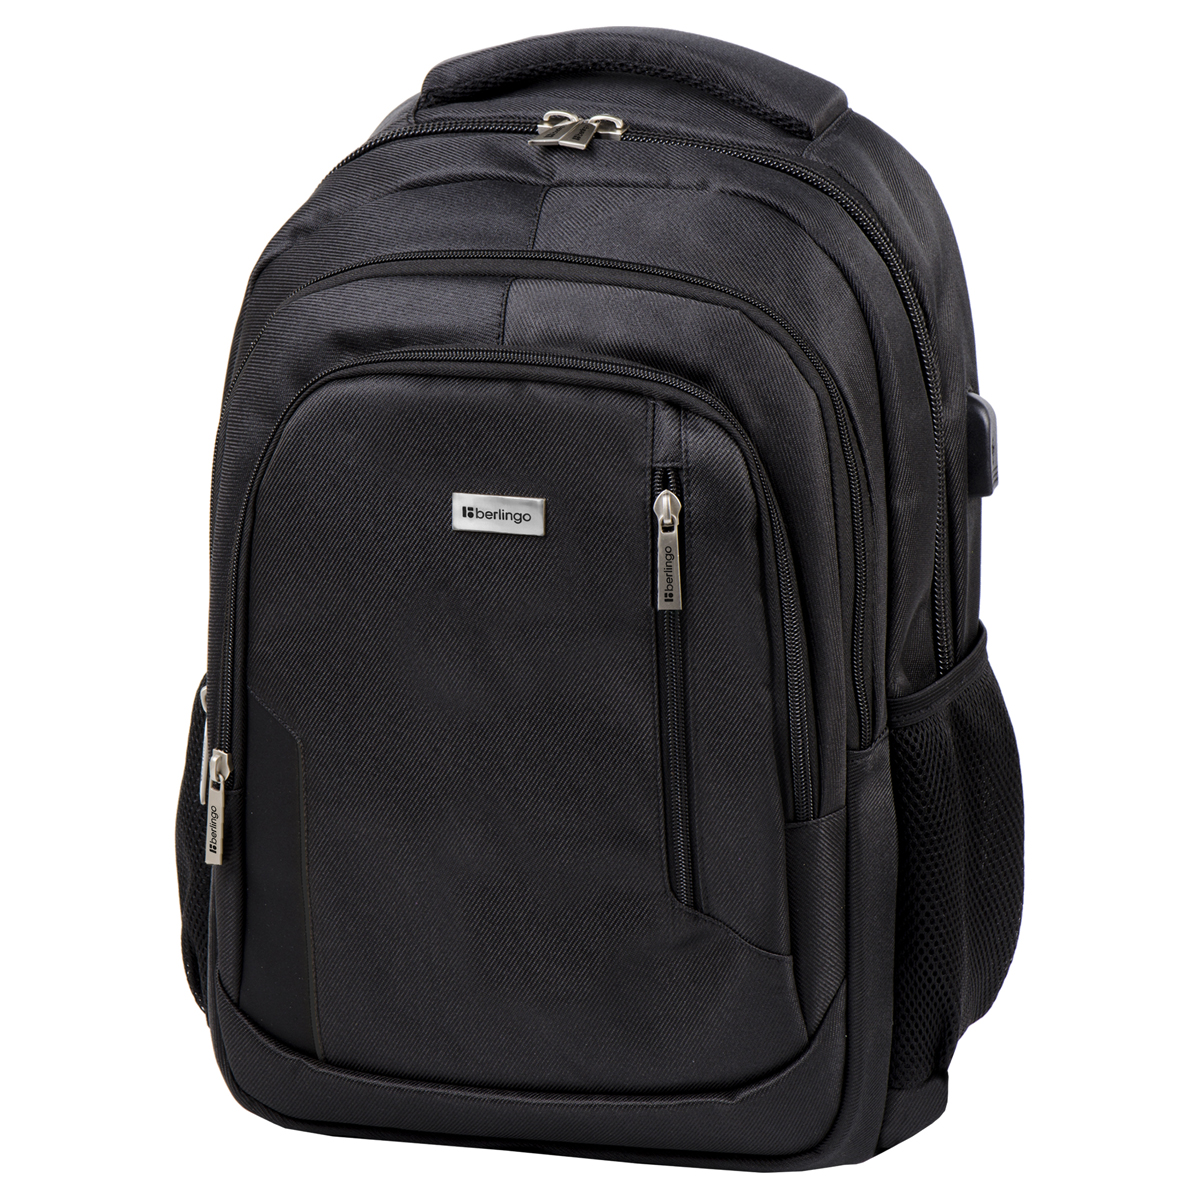 Рюкзак Berlingo City Comfort black 42*29*17см, 3 отделения, 3 кармана, отделение для ноутбука, USB (Вид 1)